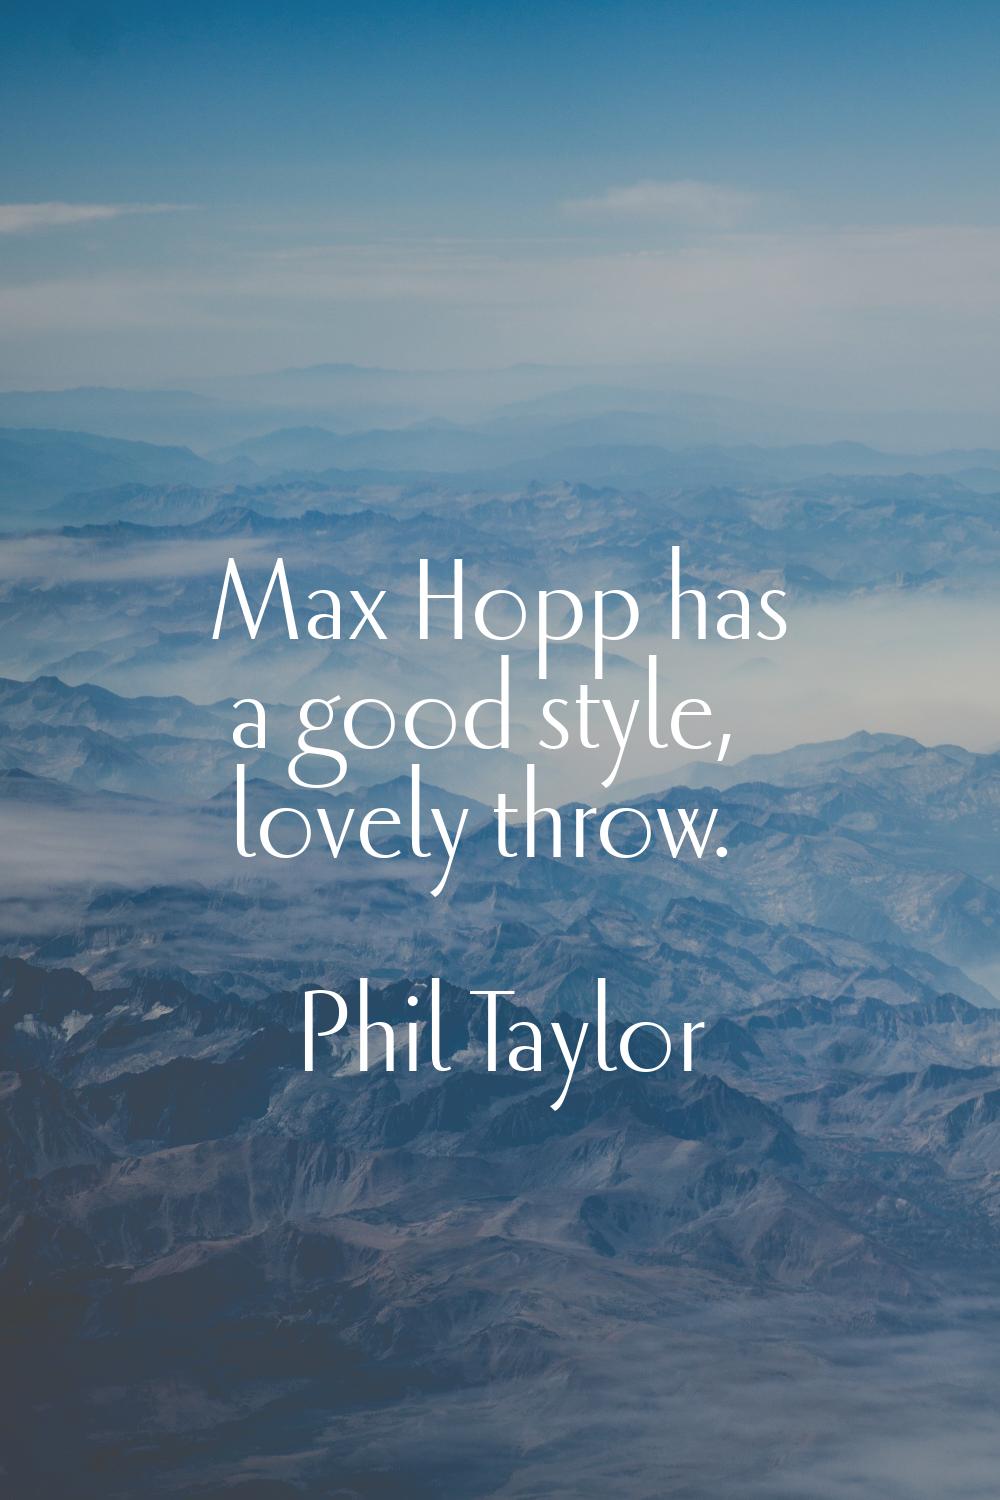 Max Hopp has a good style, lovely throw.